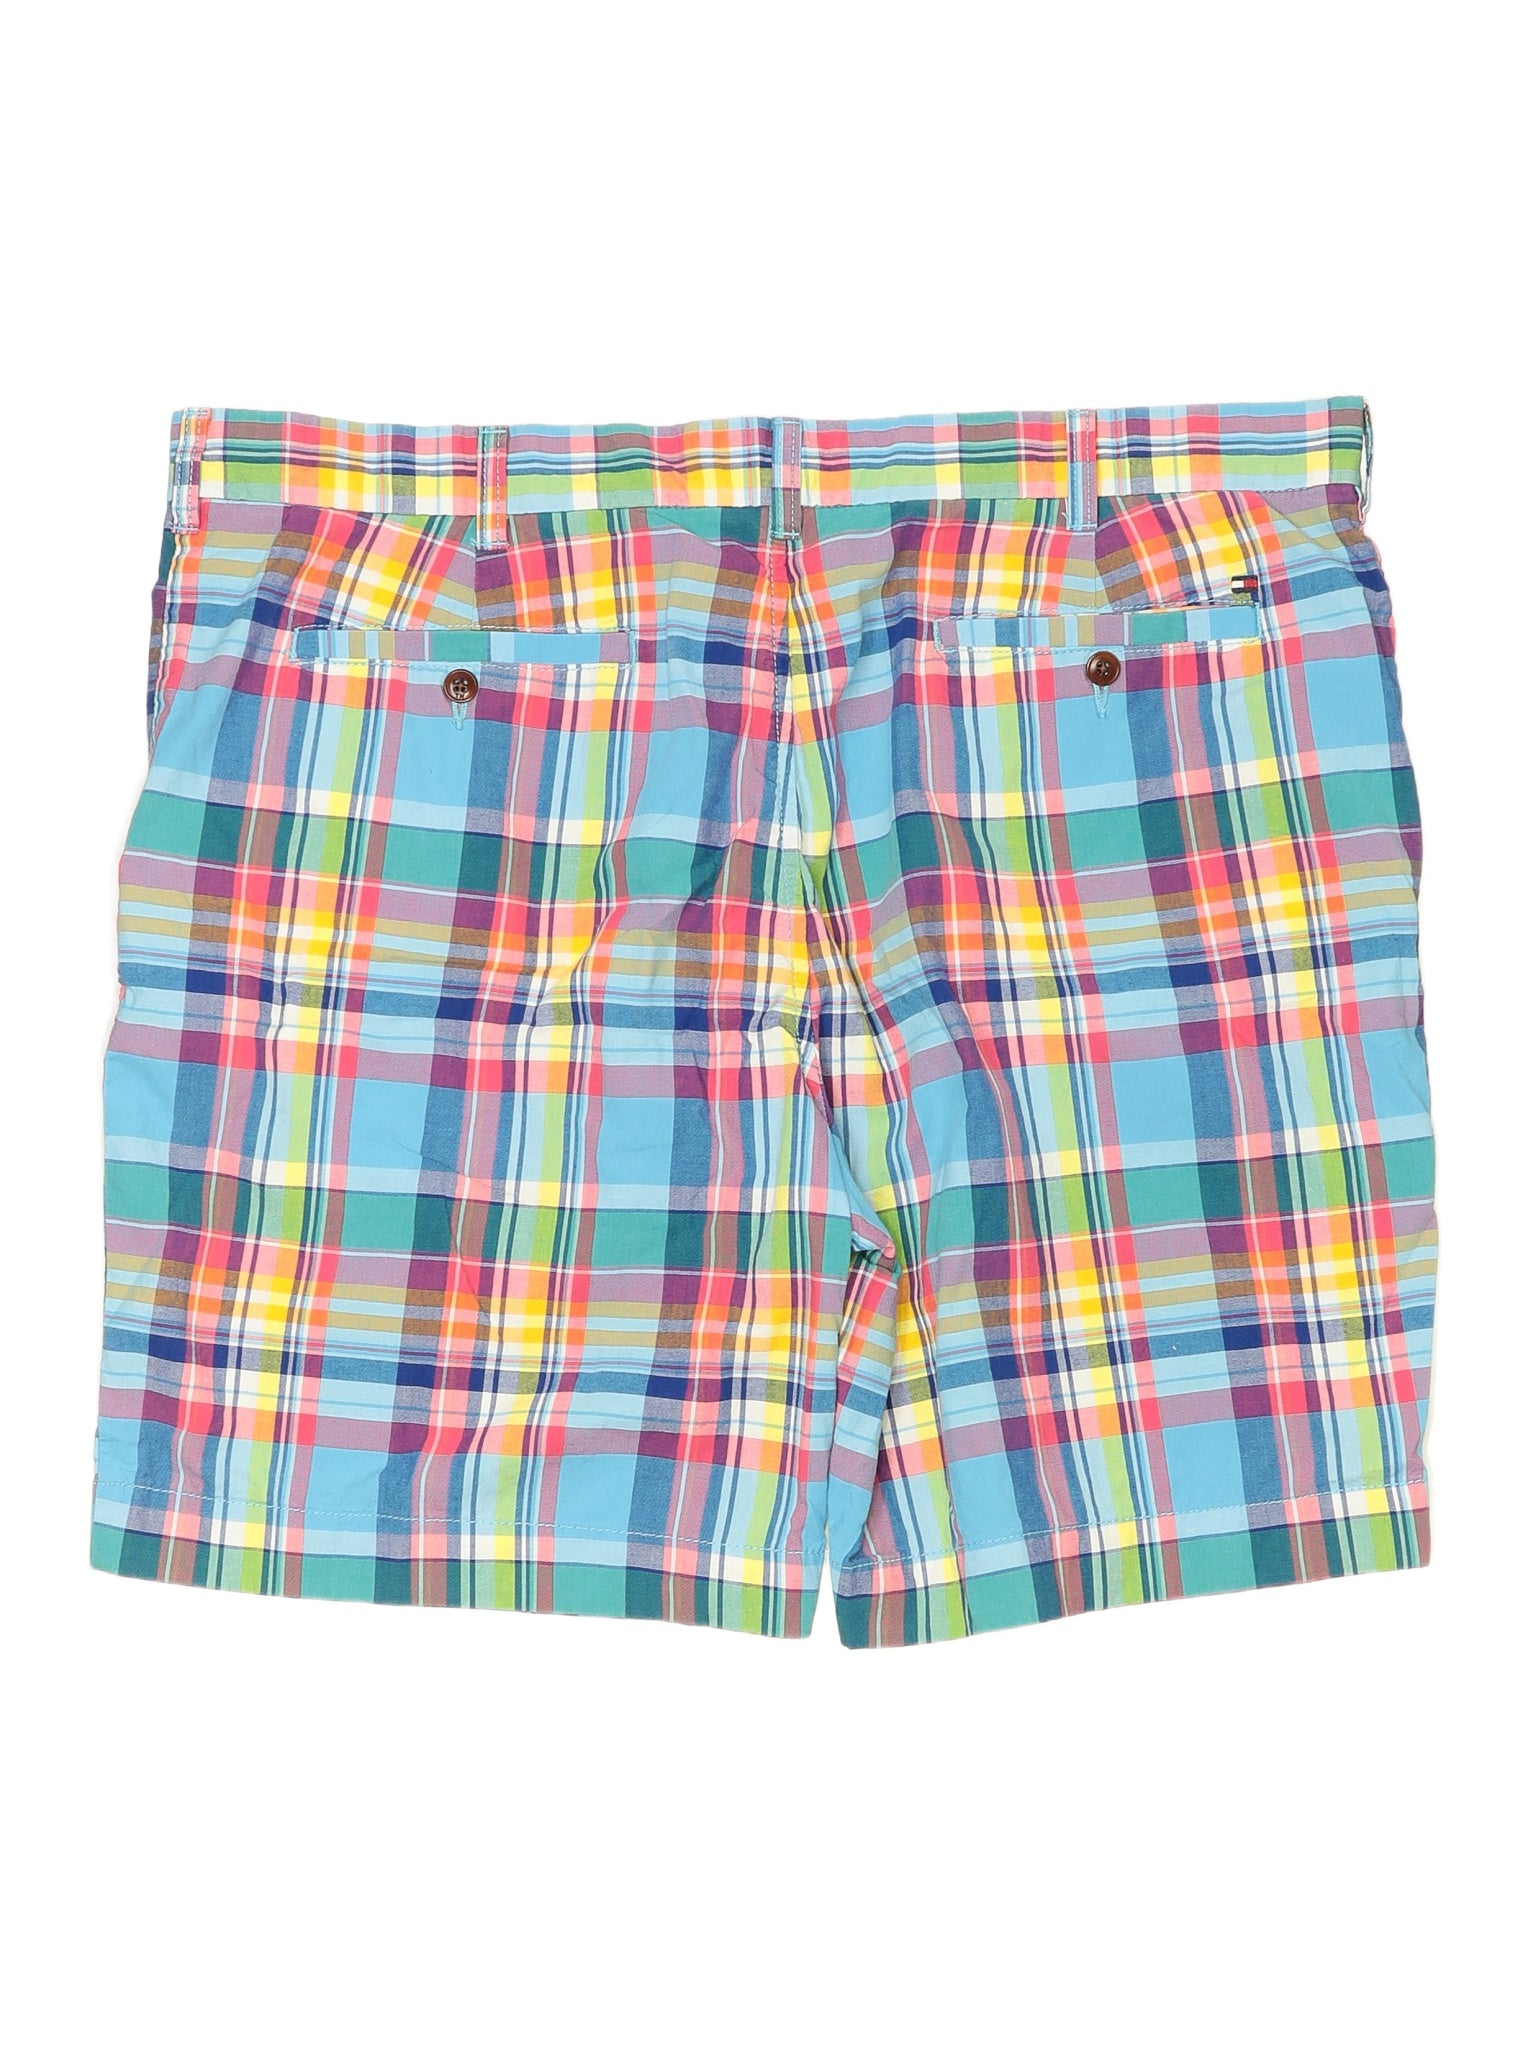 Khaki/Chino Shorts waist size - 40